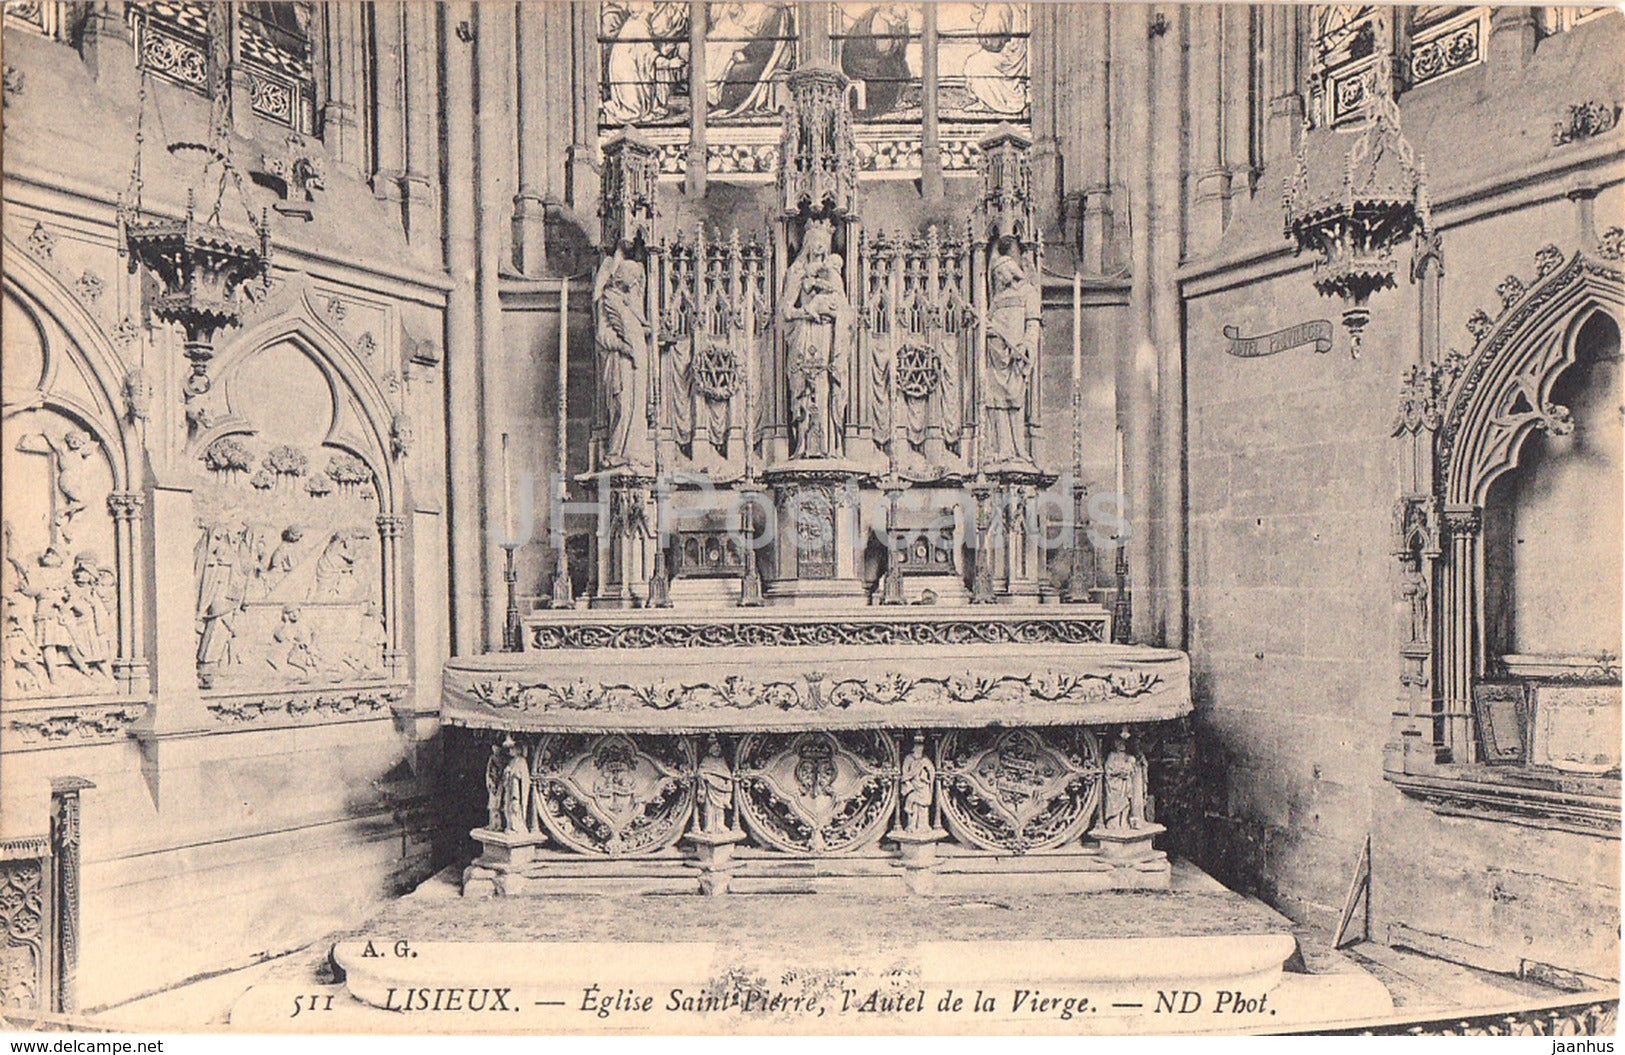 Lisieux - Eglise Saint Pierre  - l'Autel de la Vierge - church - 511 - old postcard - France - unused - JH Postcards